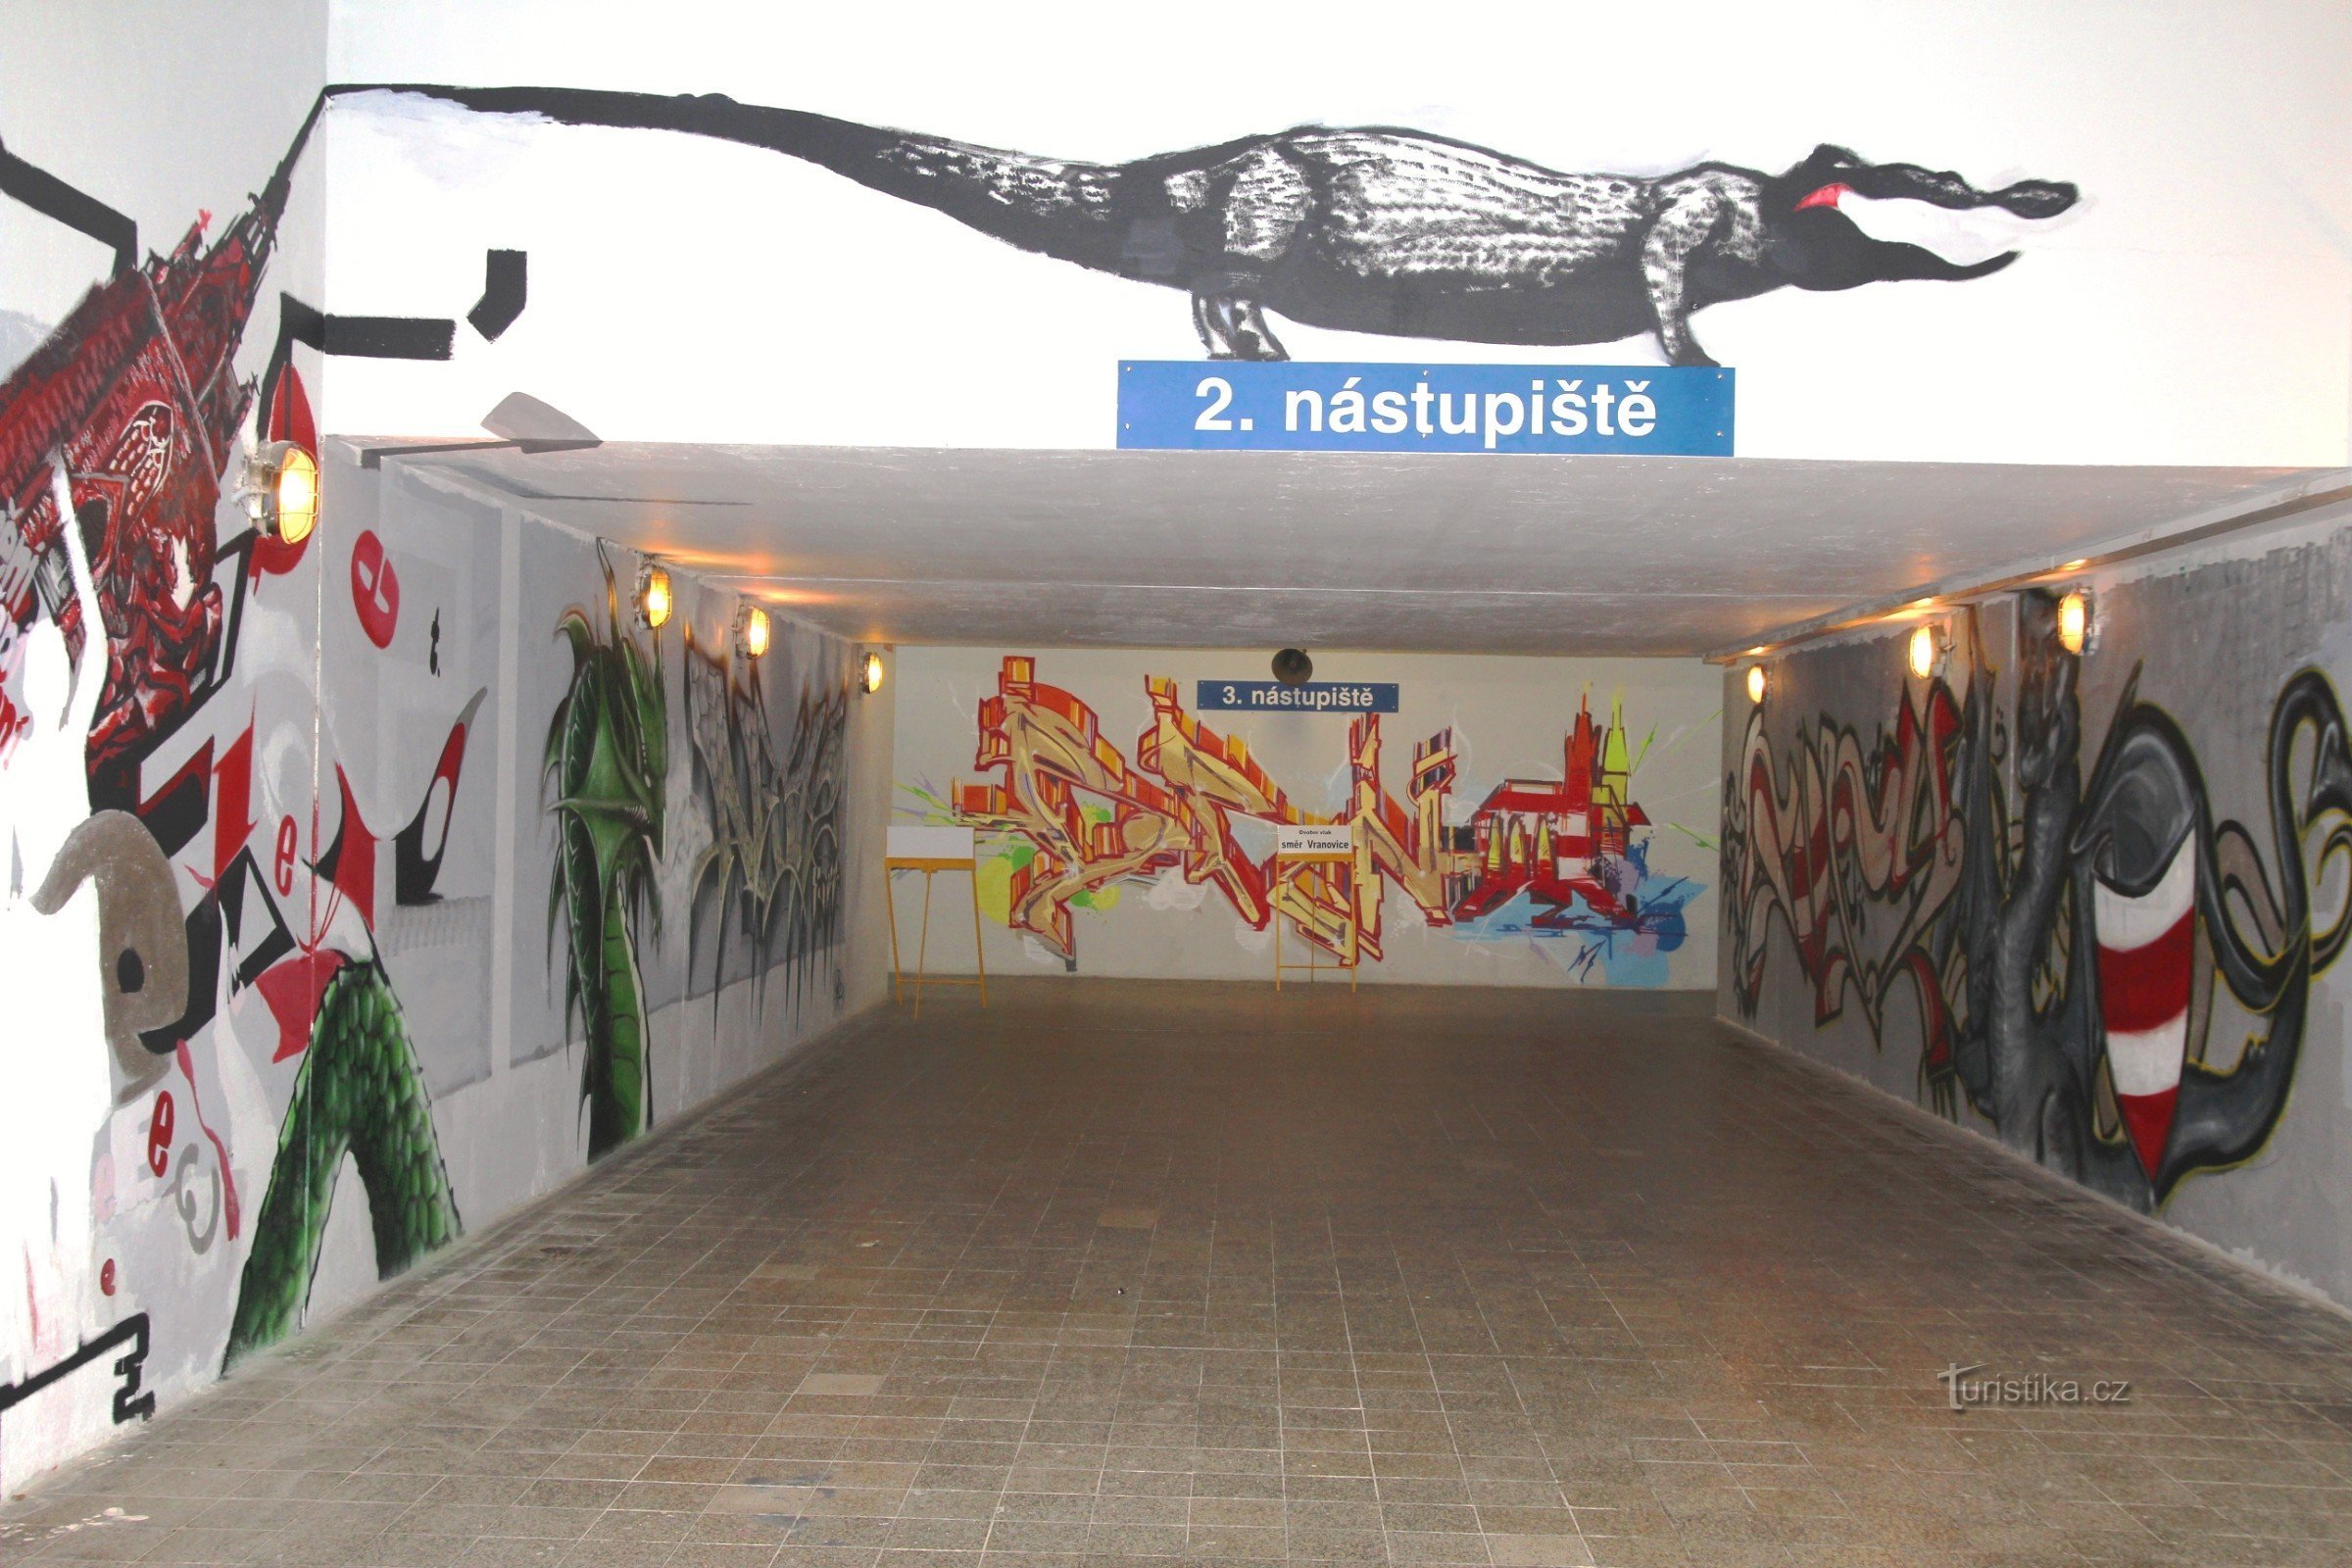 Grafiti u podzemnoj željeznici ispod željezničke stanice Židen